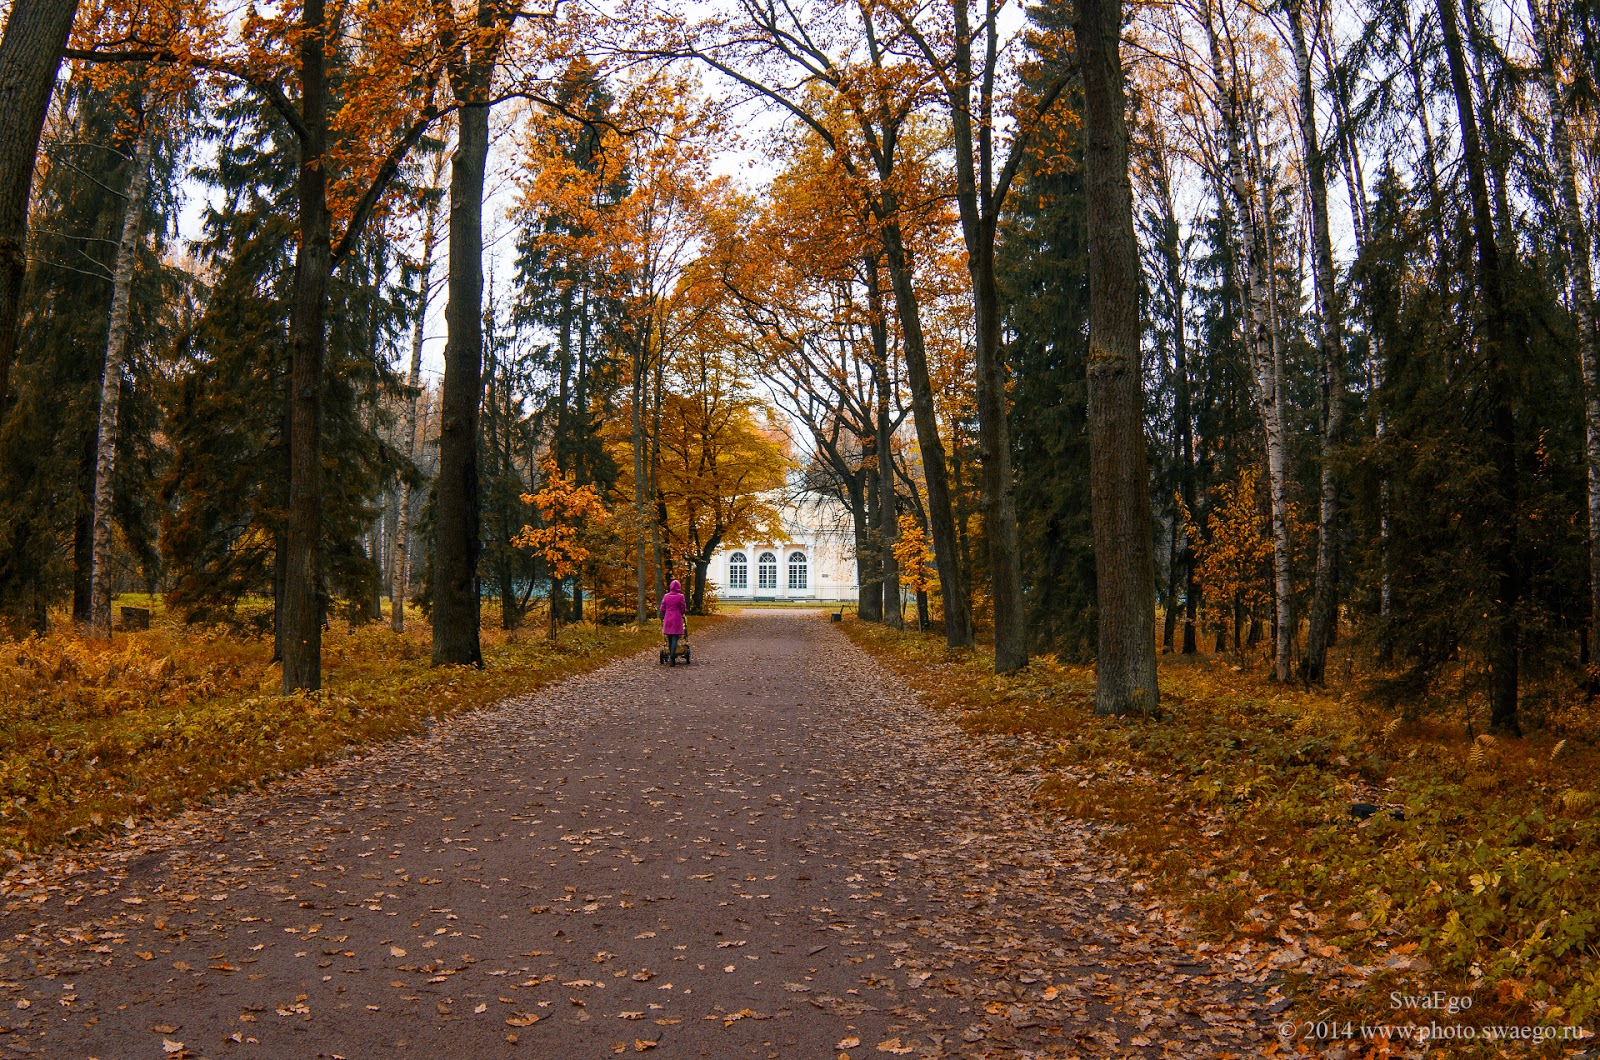 pavlovsk_autumn_2014_10_13_1833